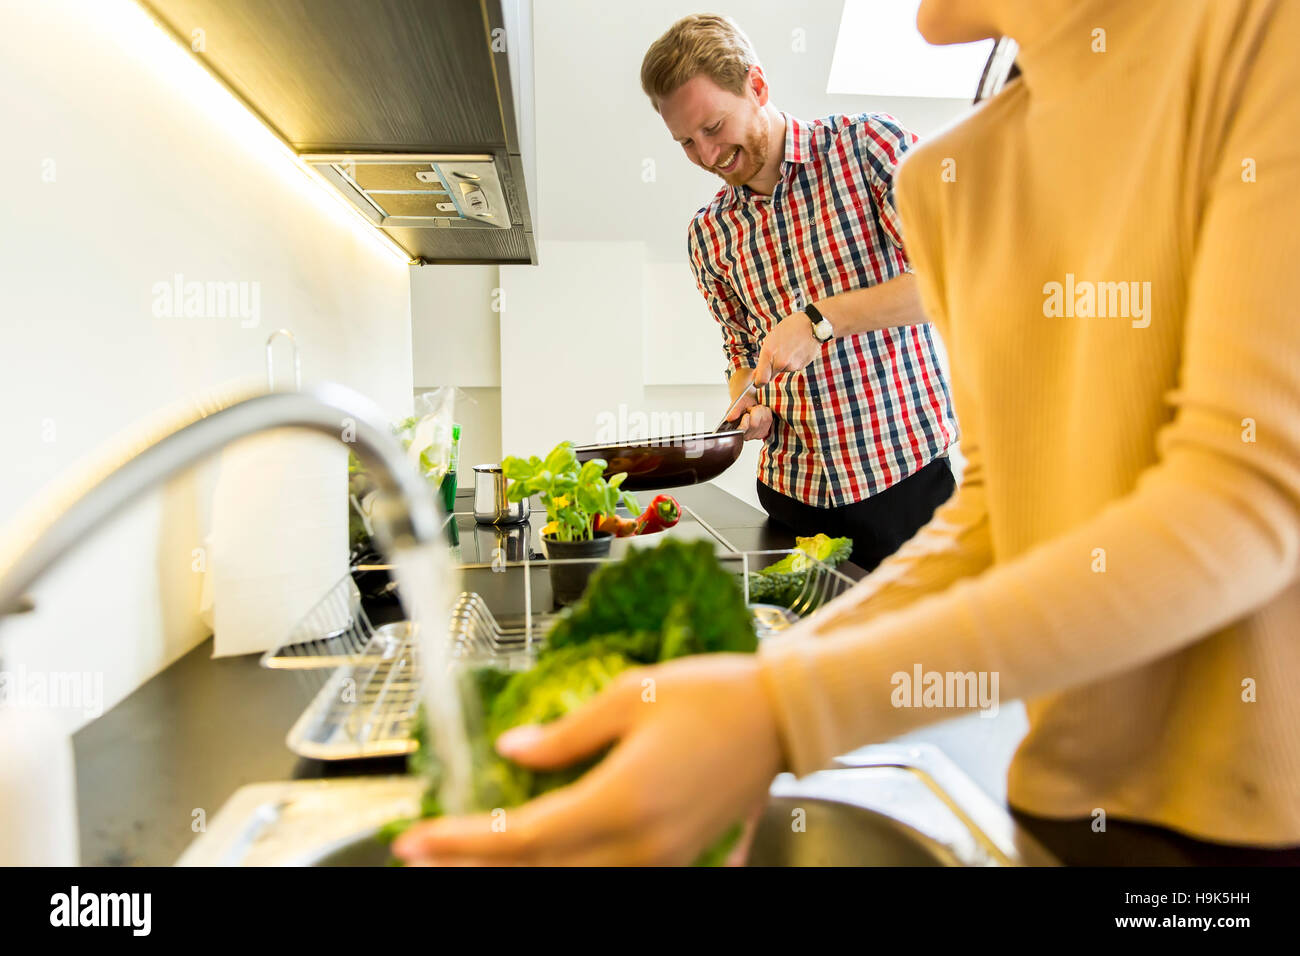 Junge Frau wäscht Grünkohl auf dem Hahn während ein junger Mann in den Hintergrund-Kochen Stockfoto